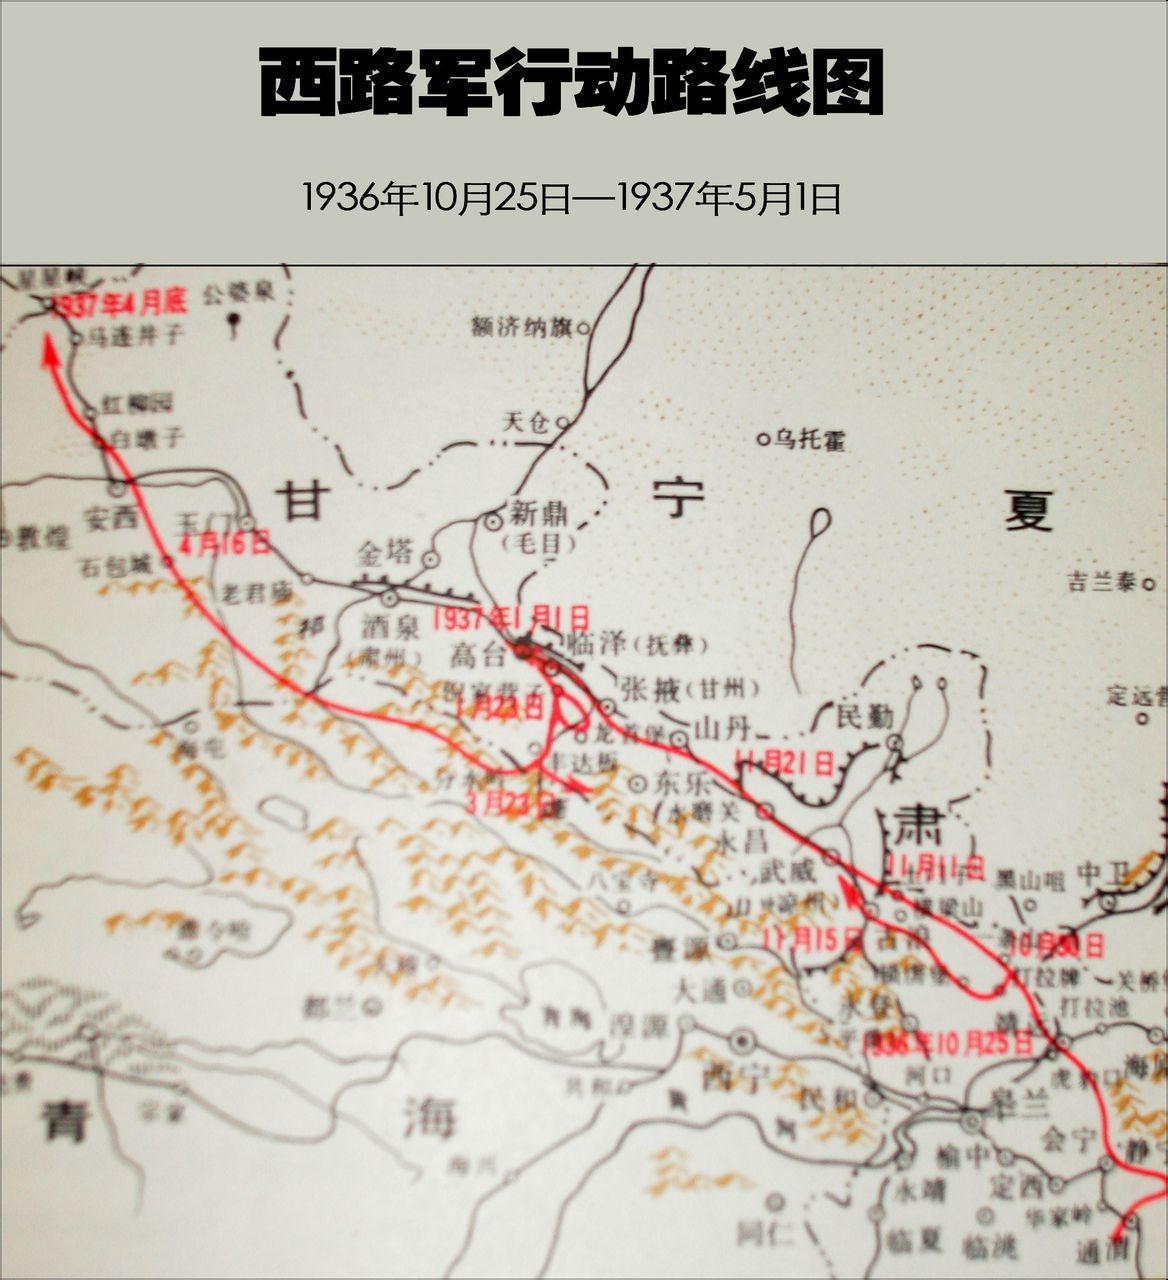 中國工農紅軍西路軍行動路線圖